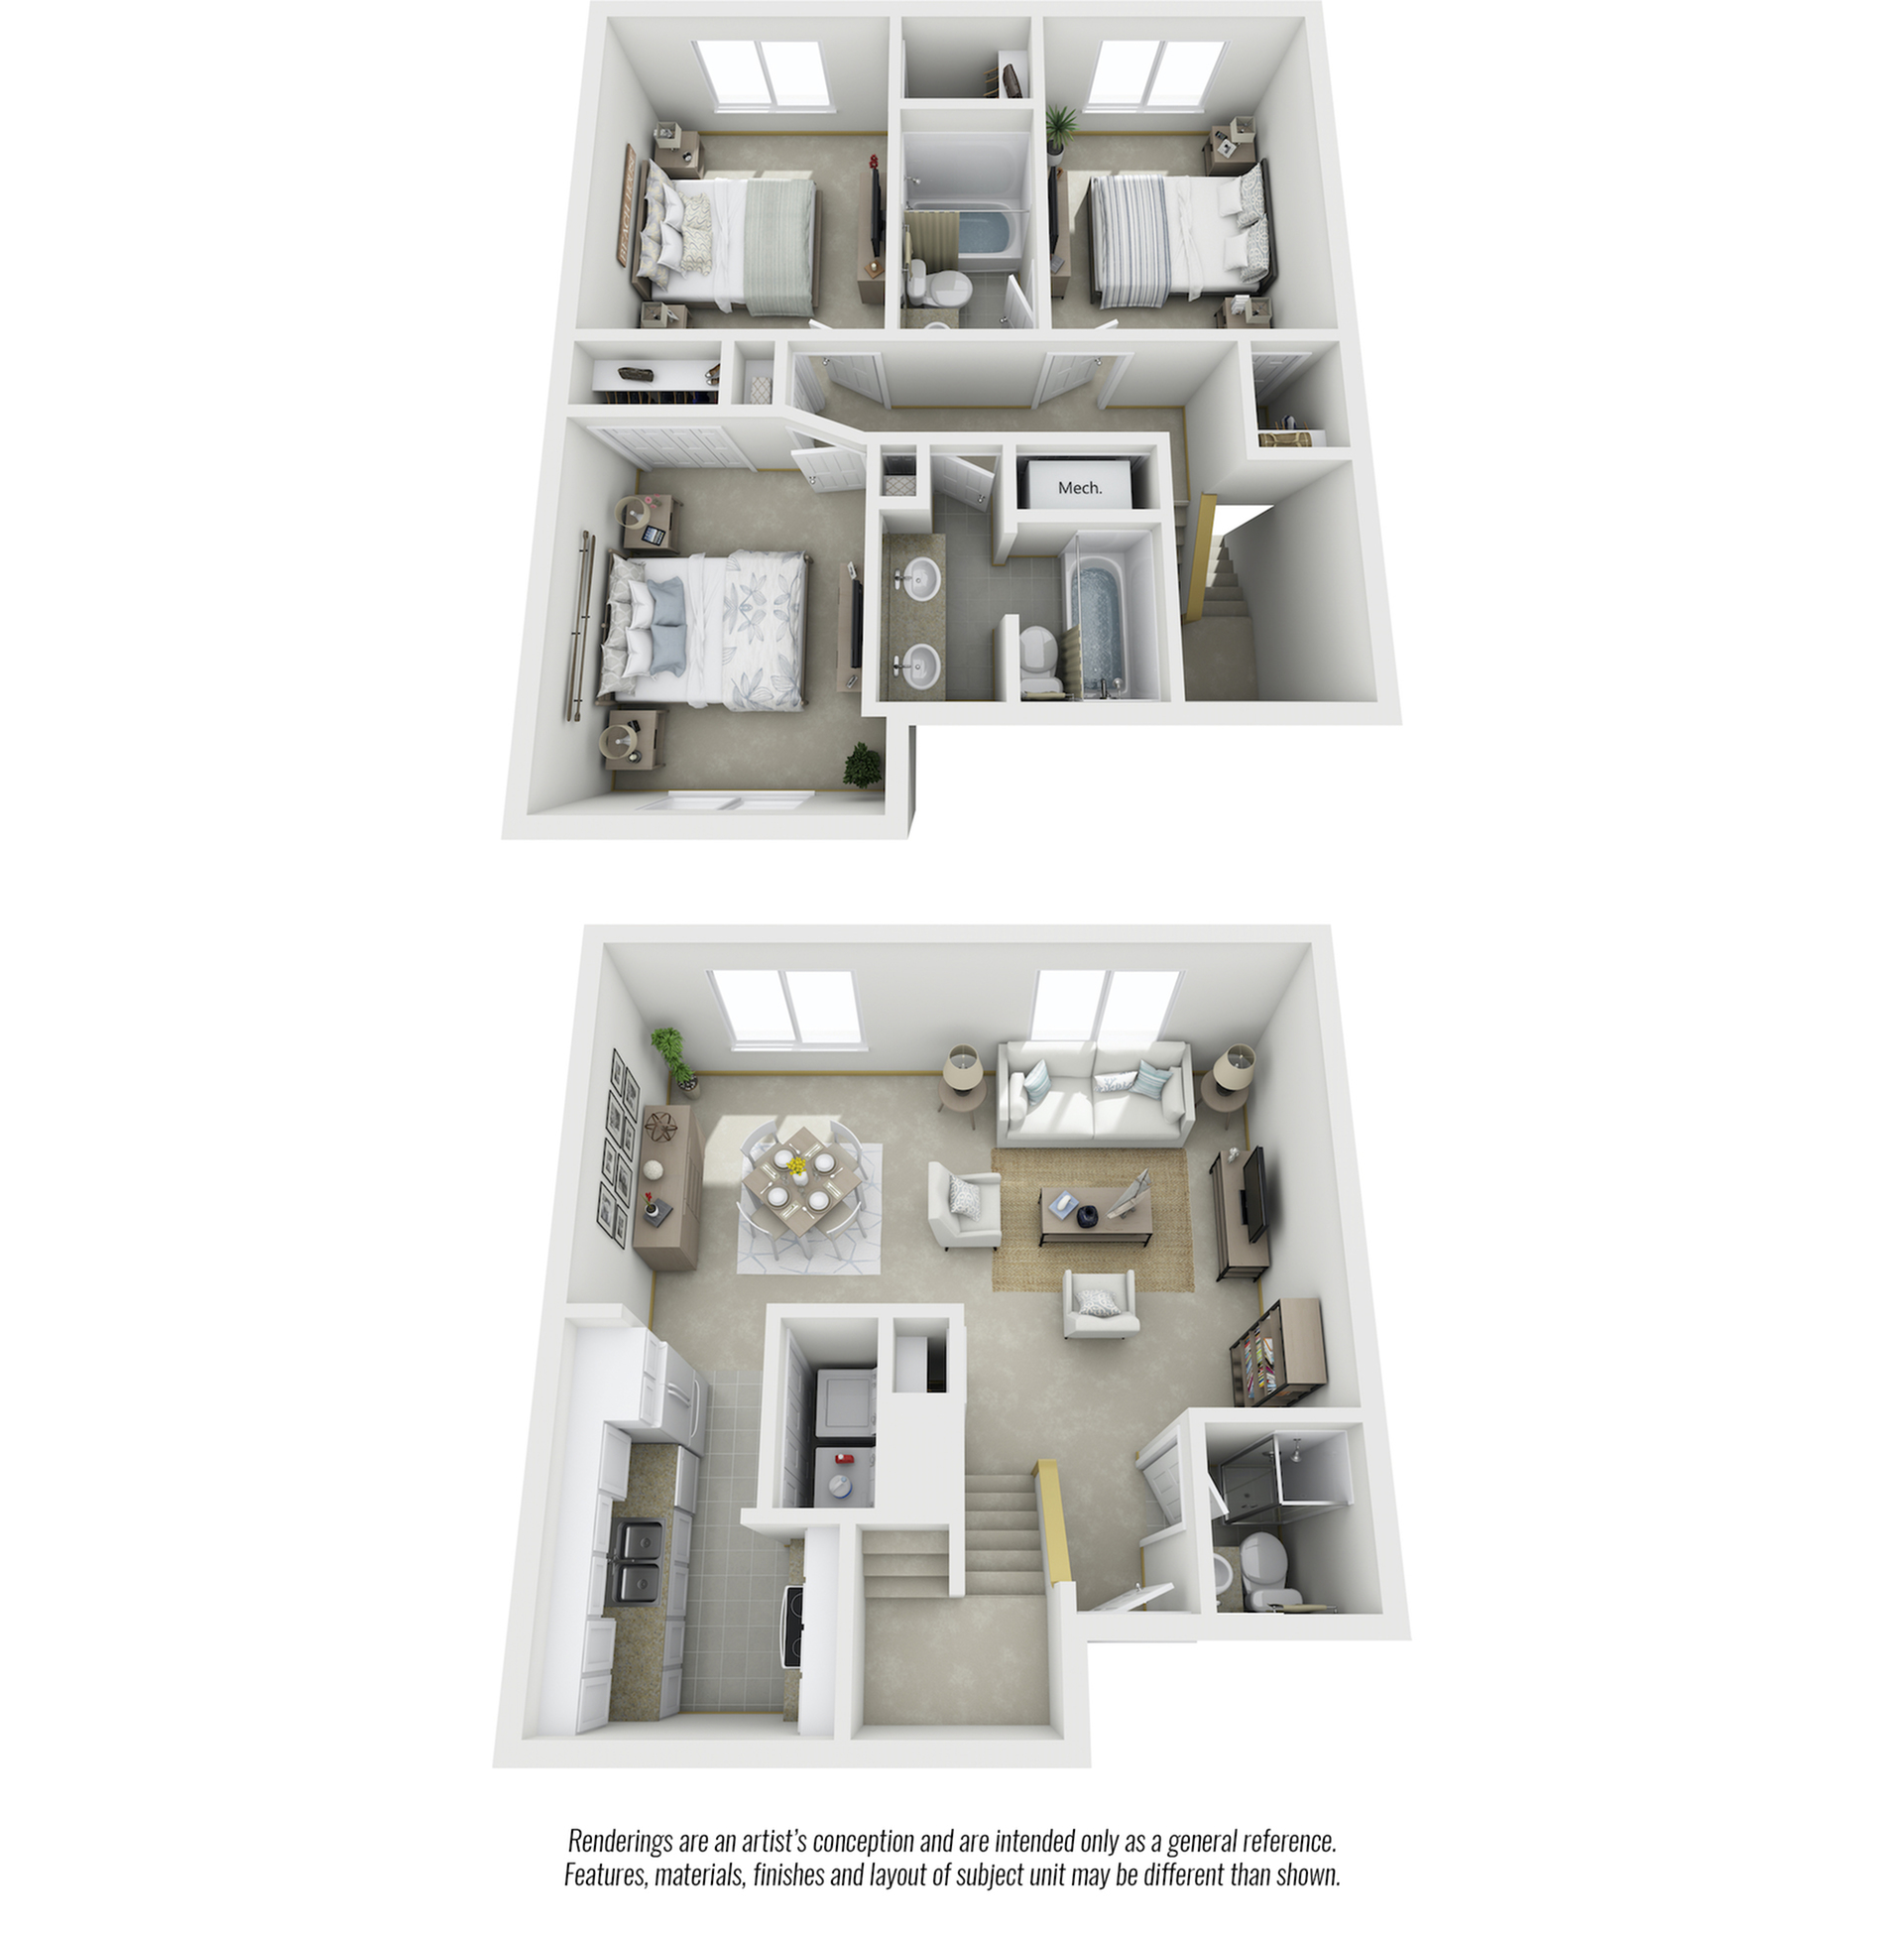 Oakwood 3 bedrooms 3 bathrooms floor plan with premium finishes